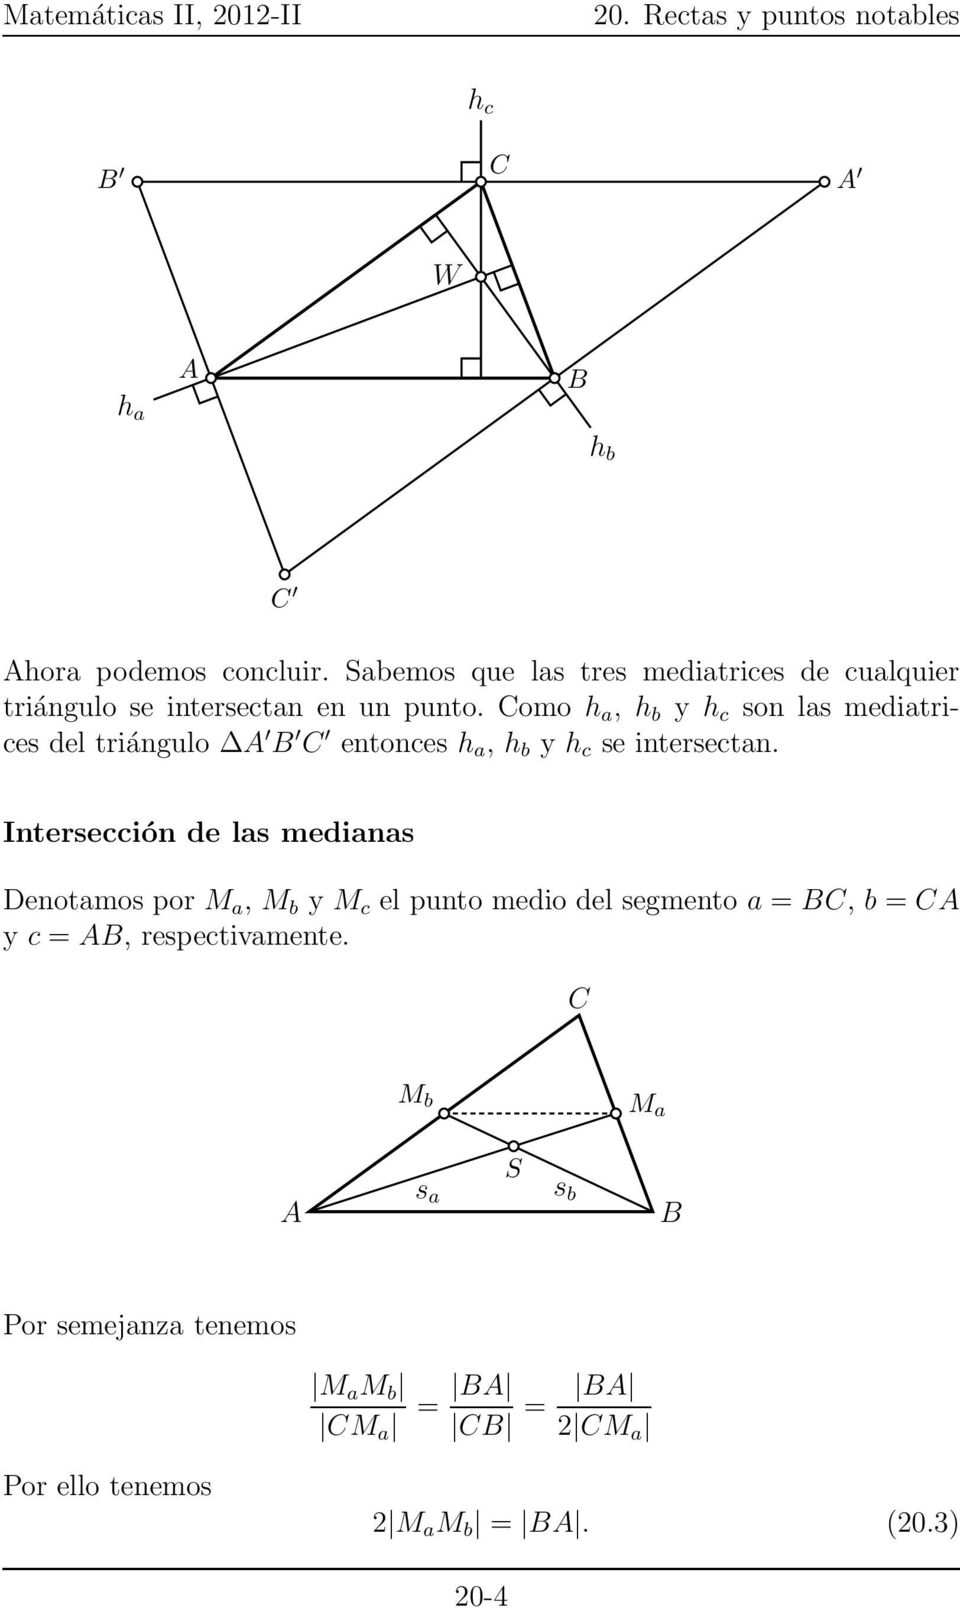 omo h a, h b y h c son las mediatrices del triángulo entonces h a, h b y h c se intersectan.